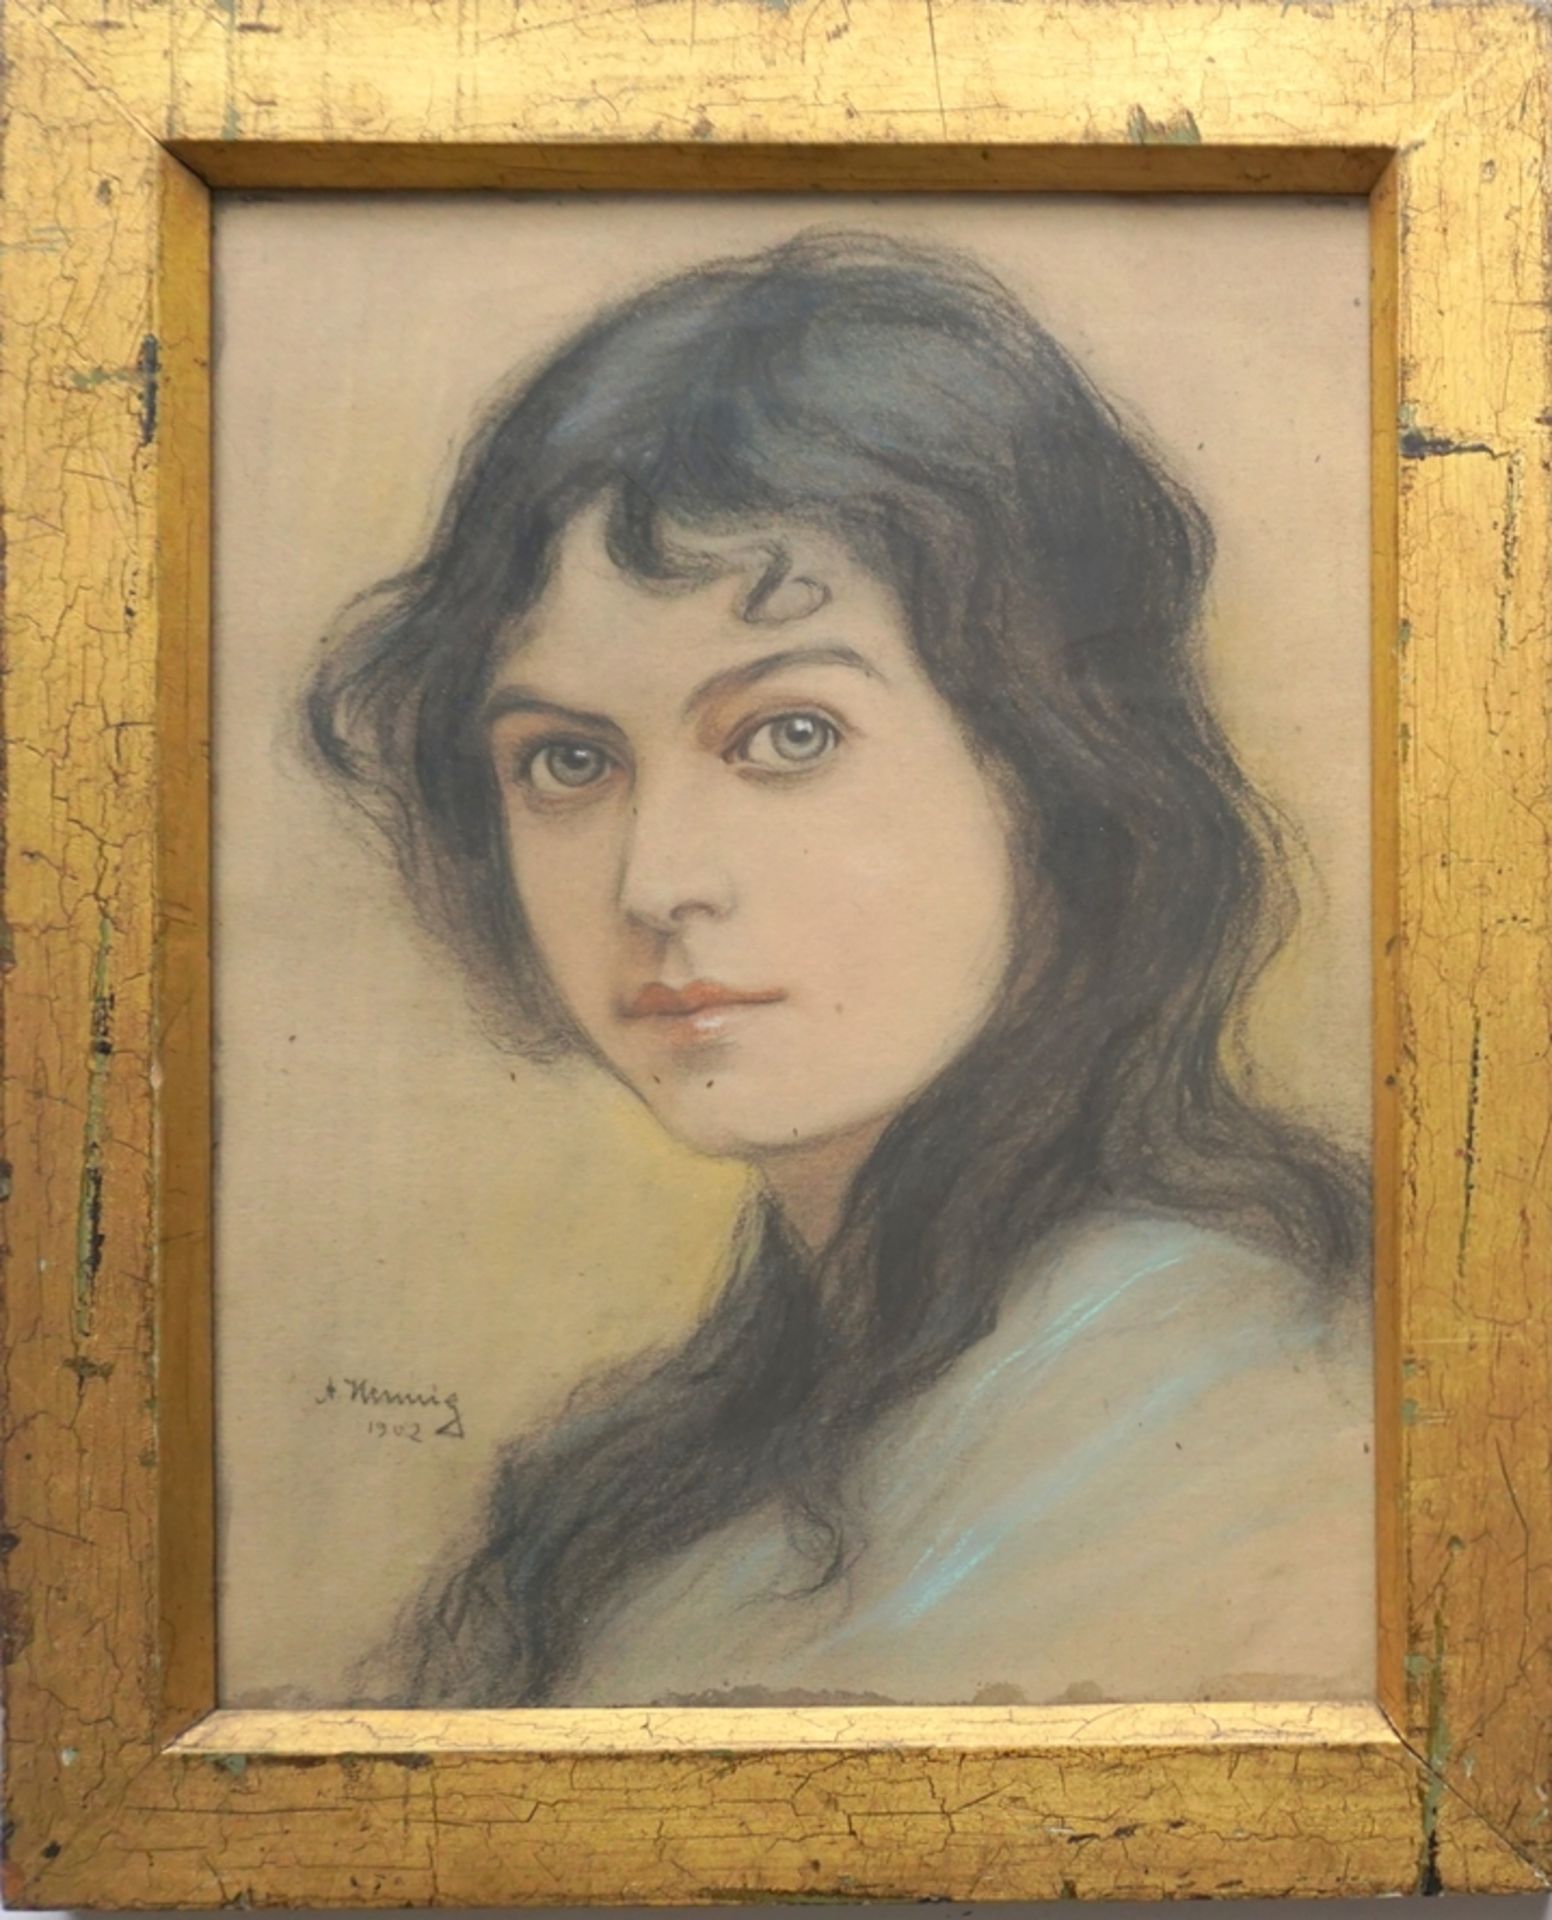 Arthur Hennig (1880, Dresden - 1959), "Mädchenportrait", 1902, Pastellkreide/Papier